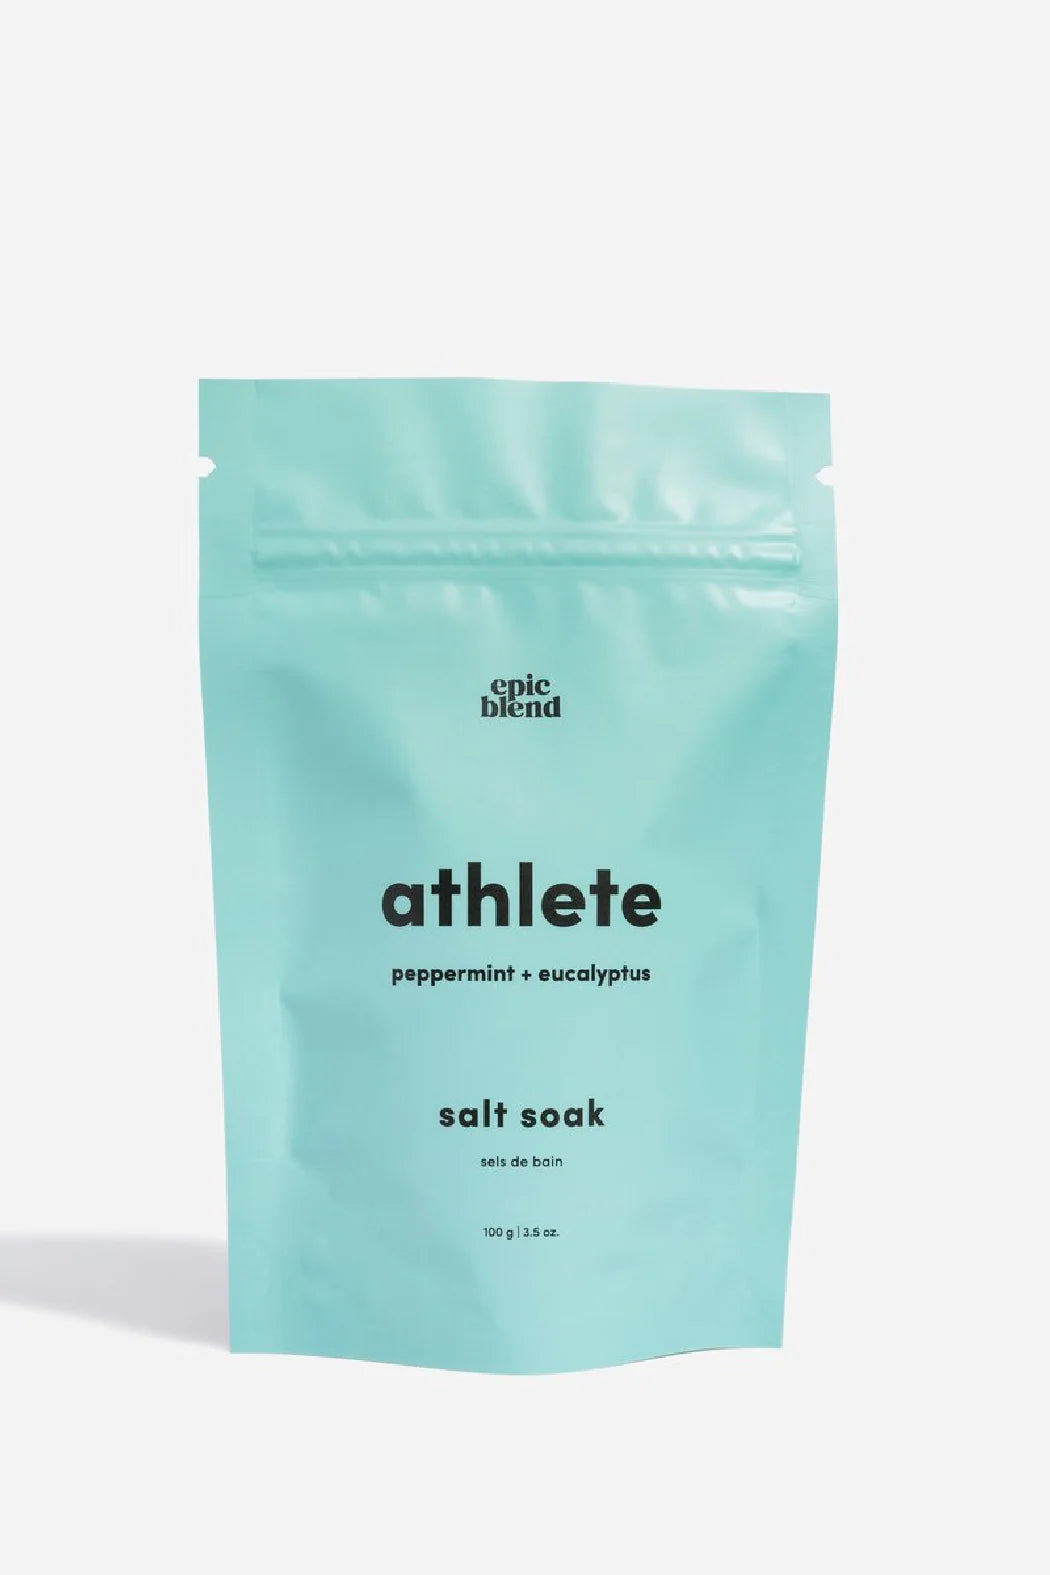 Athlete Salt Soak 100g / 3.5oz | Epic Blend